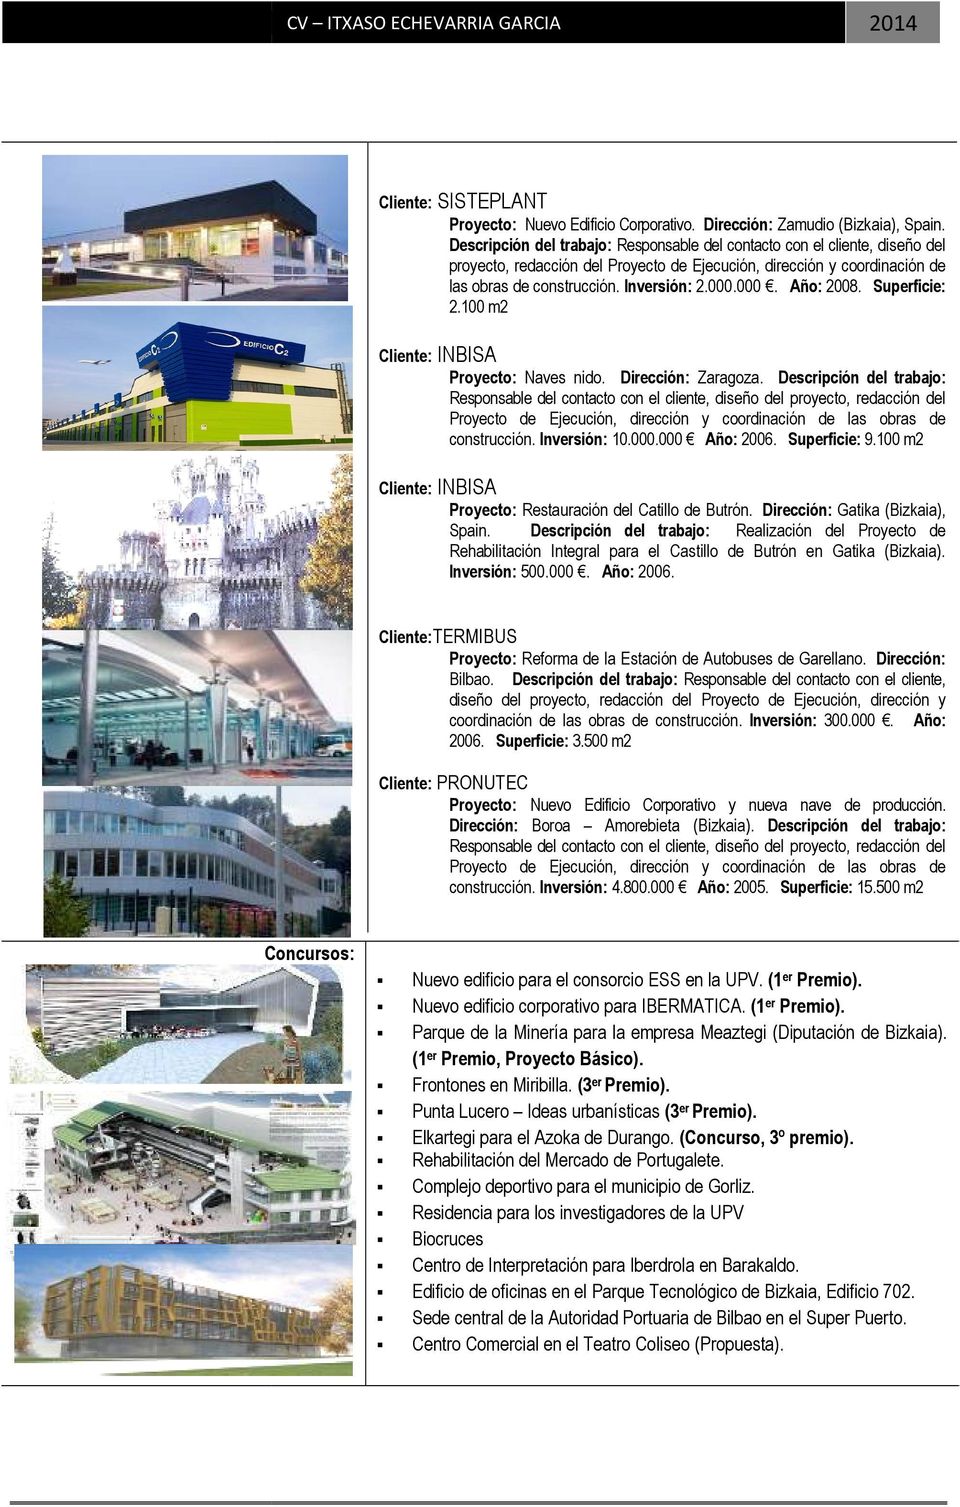 Descripción del trabajo: Realización del Proyecto de Rehabilitación Integral para el Castillo de Butrón en Gatika (Bizkaia). Inversión: 500.000. Año: 2006.